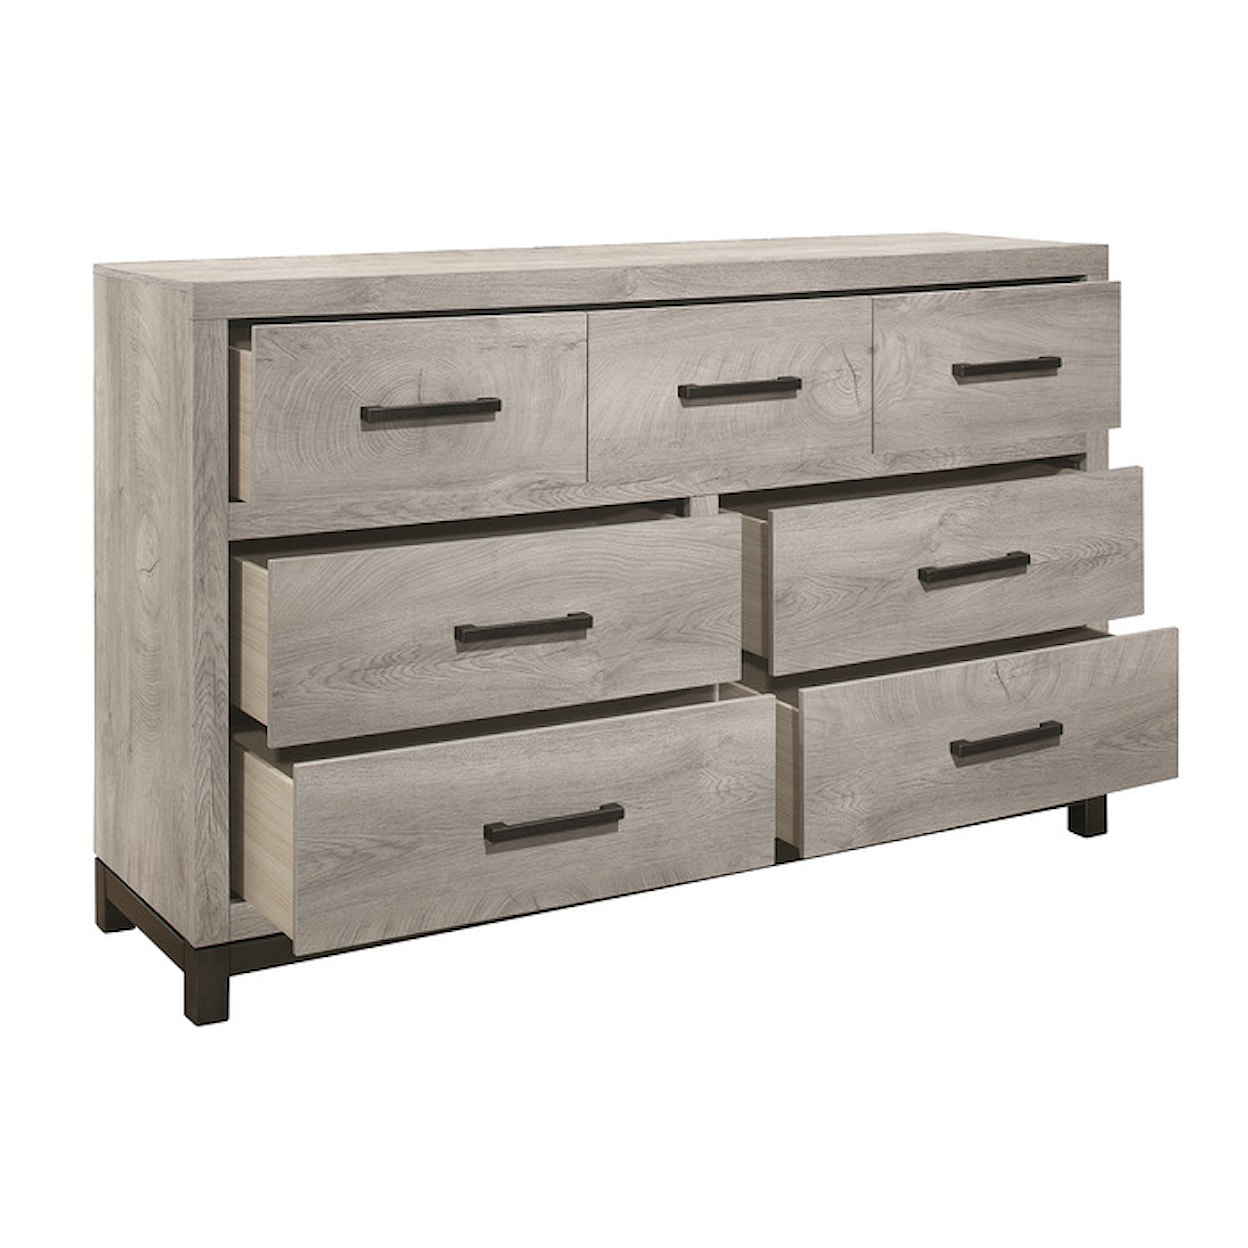 Homelegance Furniture Zephyr 7-Drawer Dresser